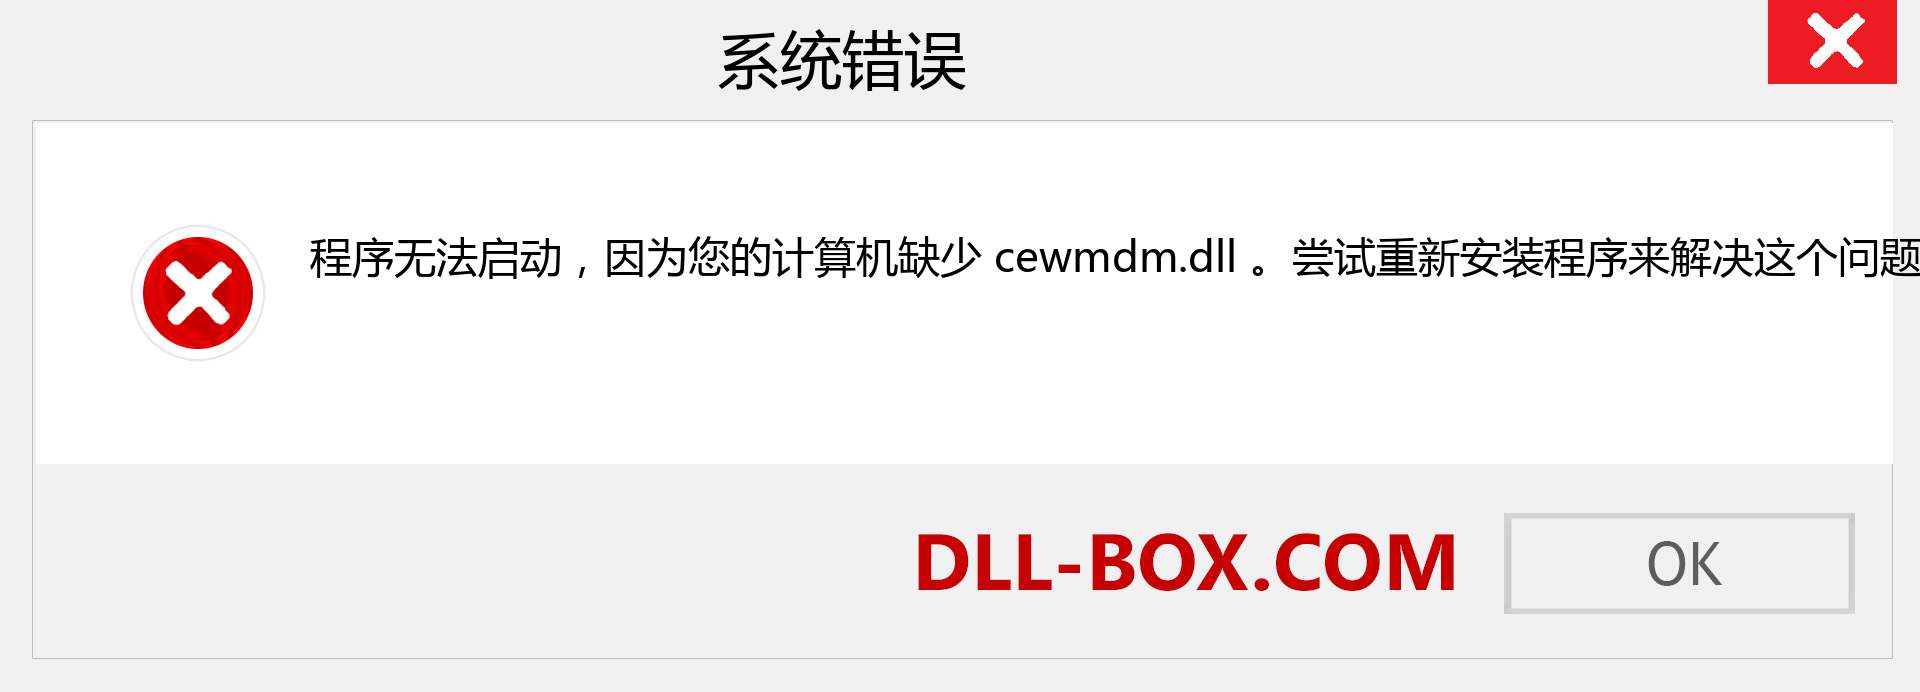 cewmdm.dll 文件丢失？。 适用于 Windows 7、8、10 的下载 - 修复 Windows、照片、图像上的 cewmdm dll 丢失错误